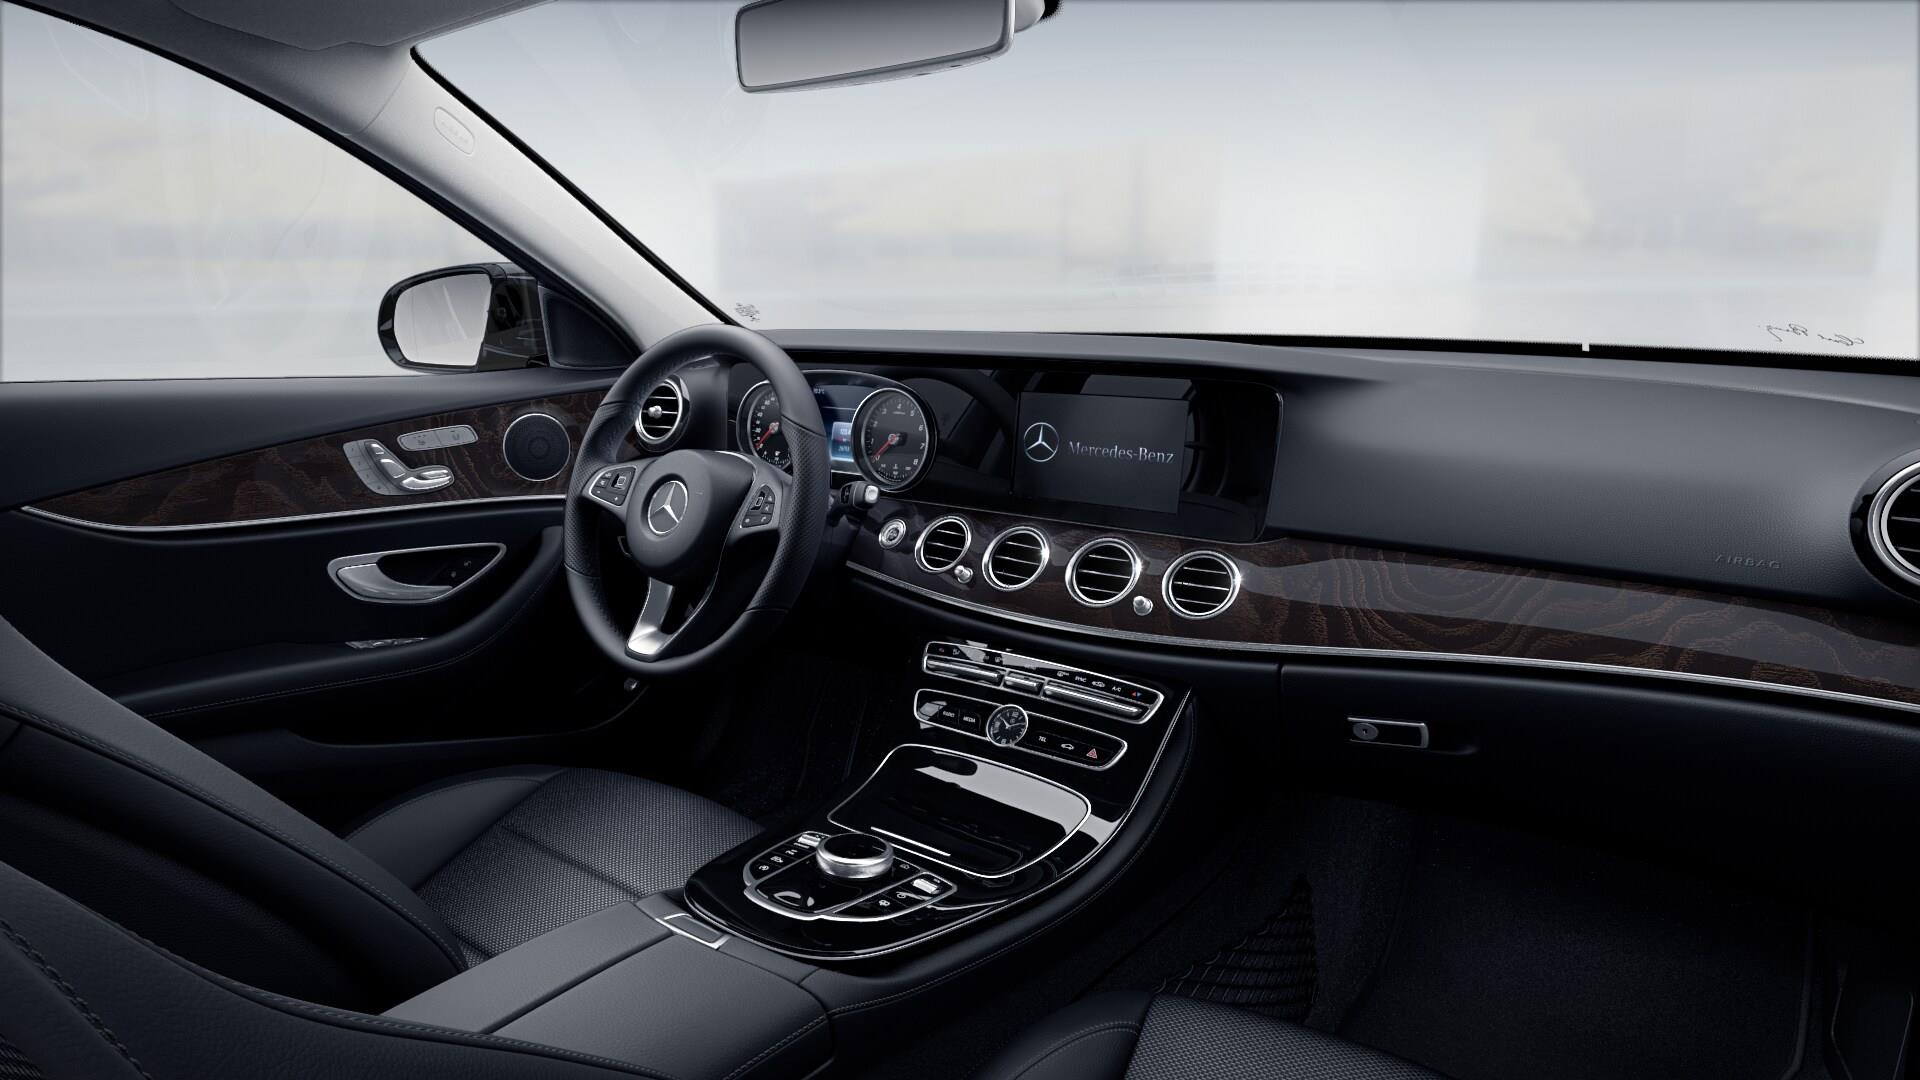 Ավանգարդ Մոթորս. հատուկ գնային առաջարկ՝ Mercedes-Benz E 200 մոդելի ձեռք բերման համար